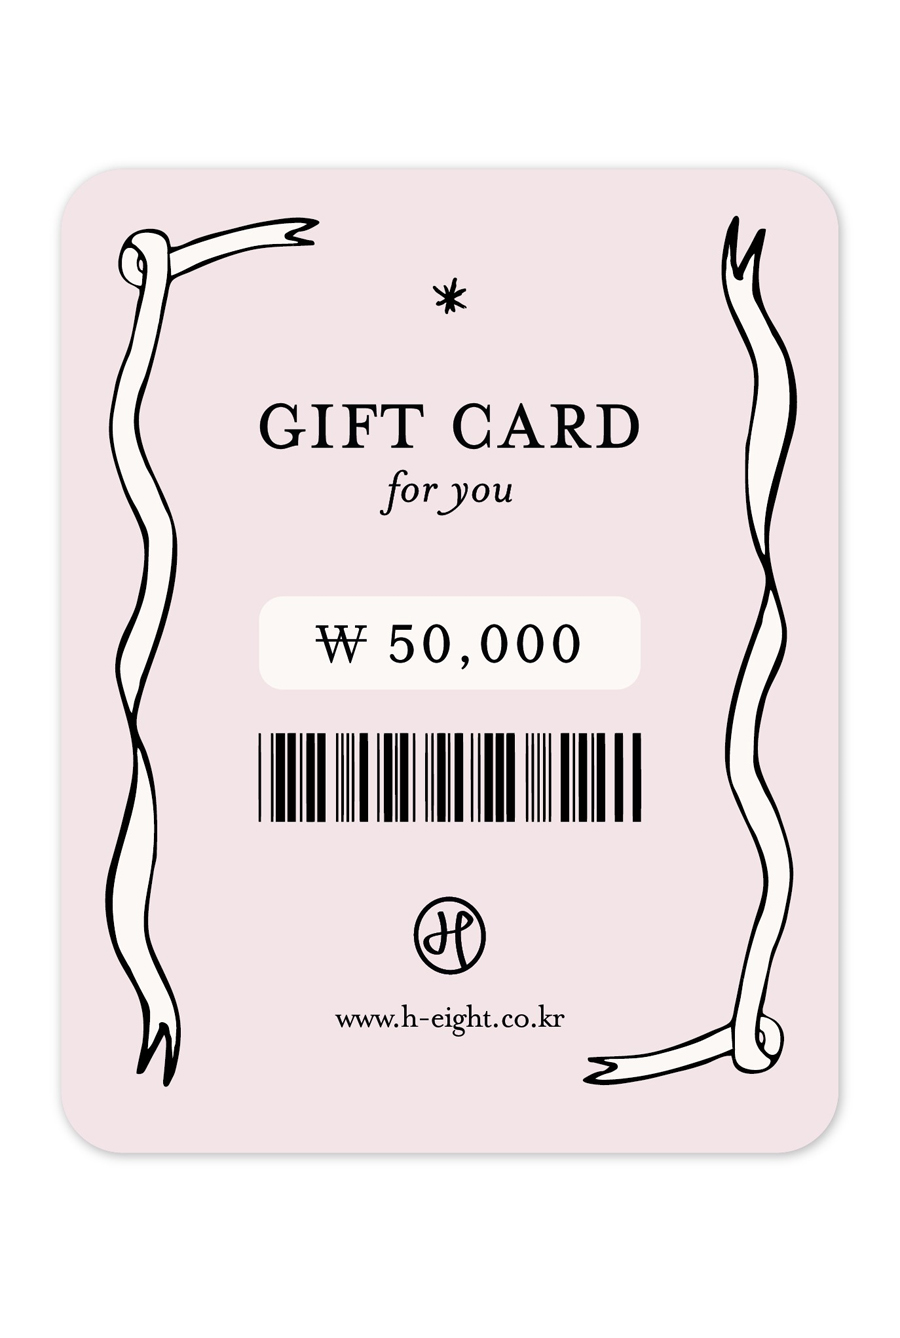 GIFT CARD (지급액 55,000원)